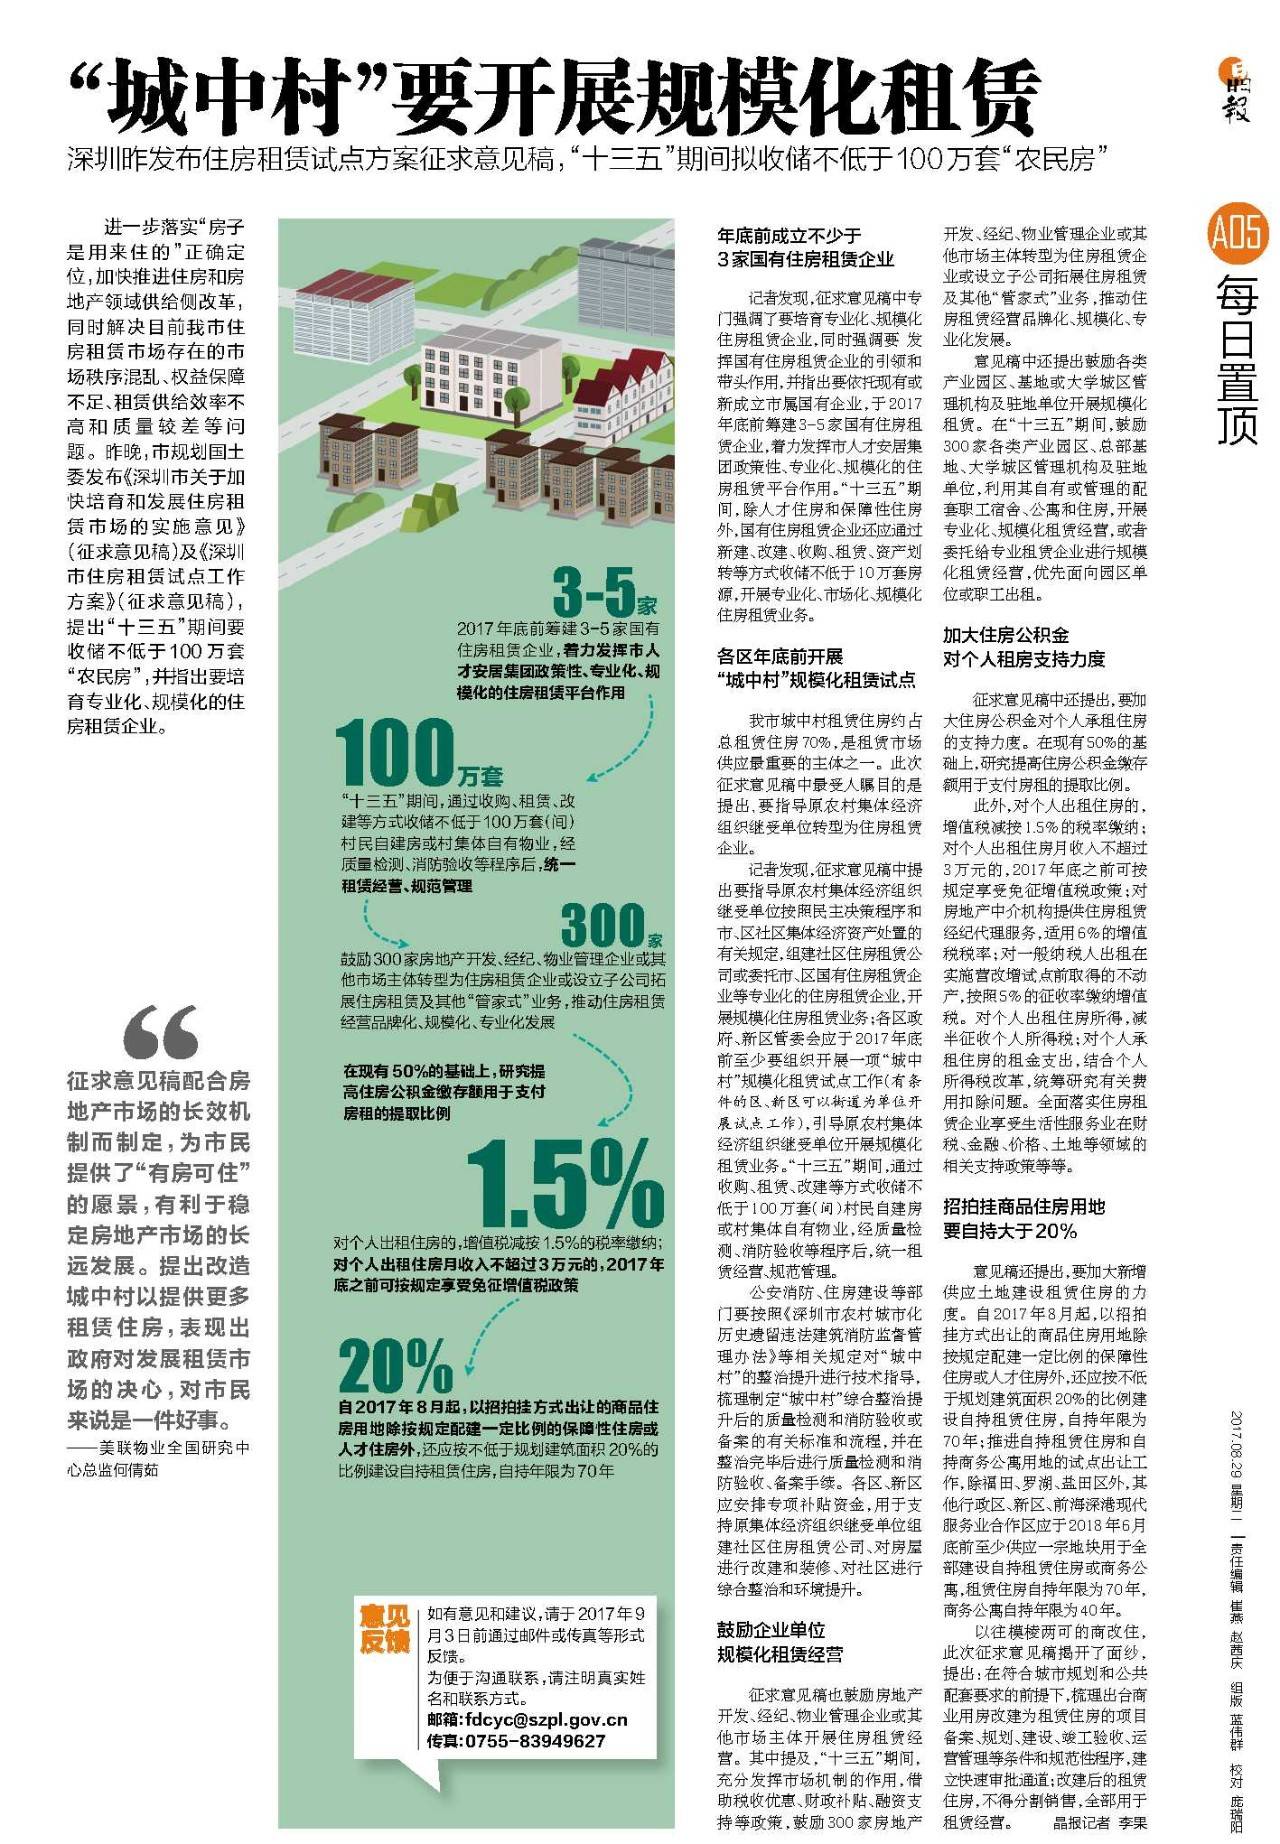 圳城中村拟开展规模化租赁|房地产|区政府|建筑